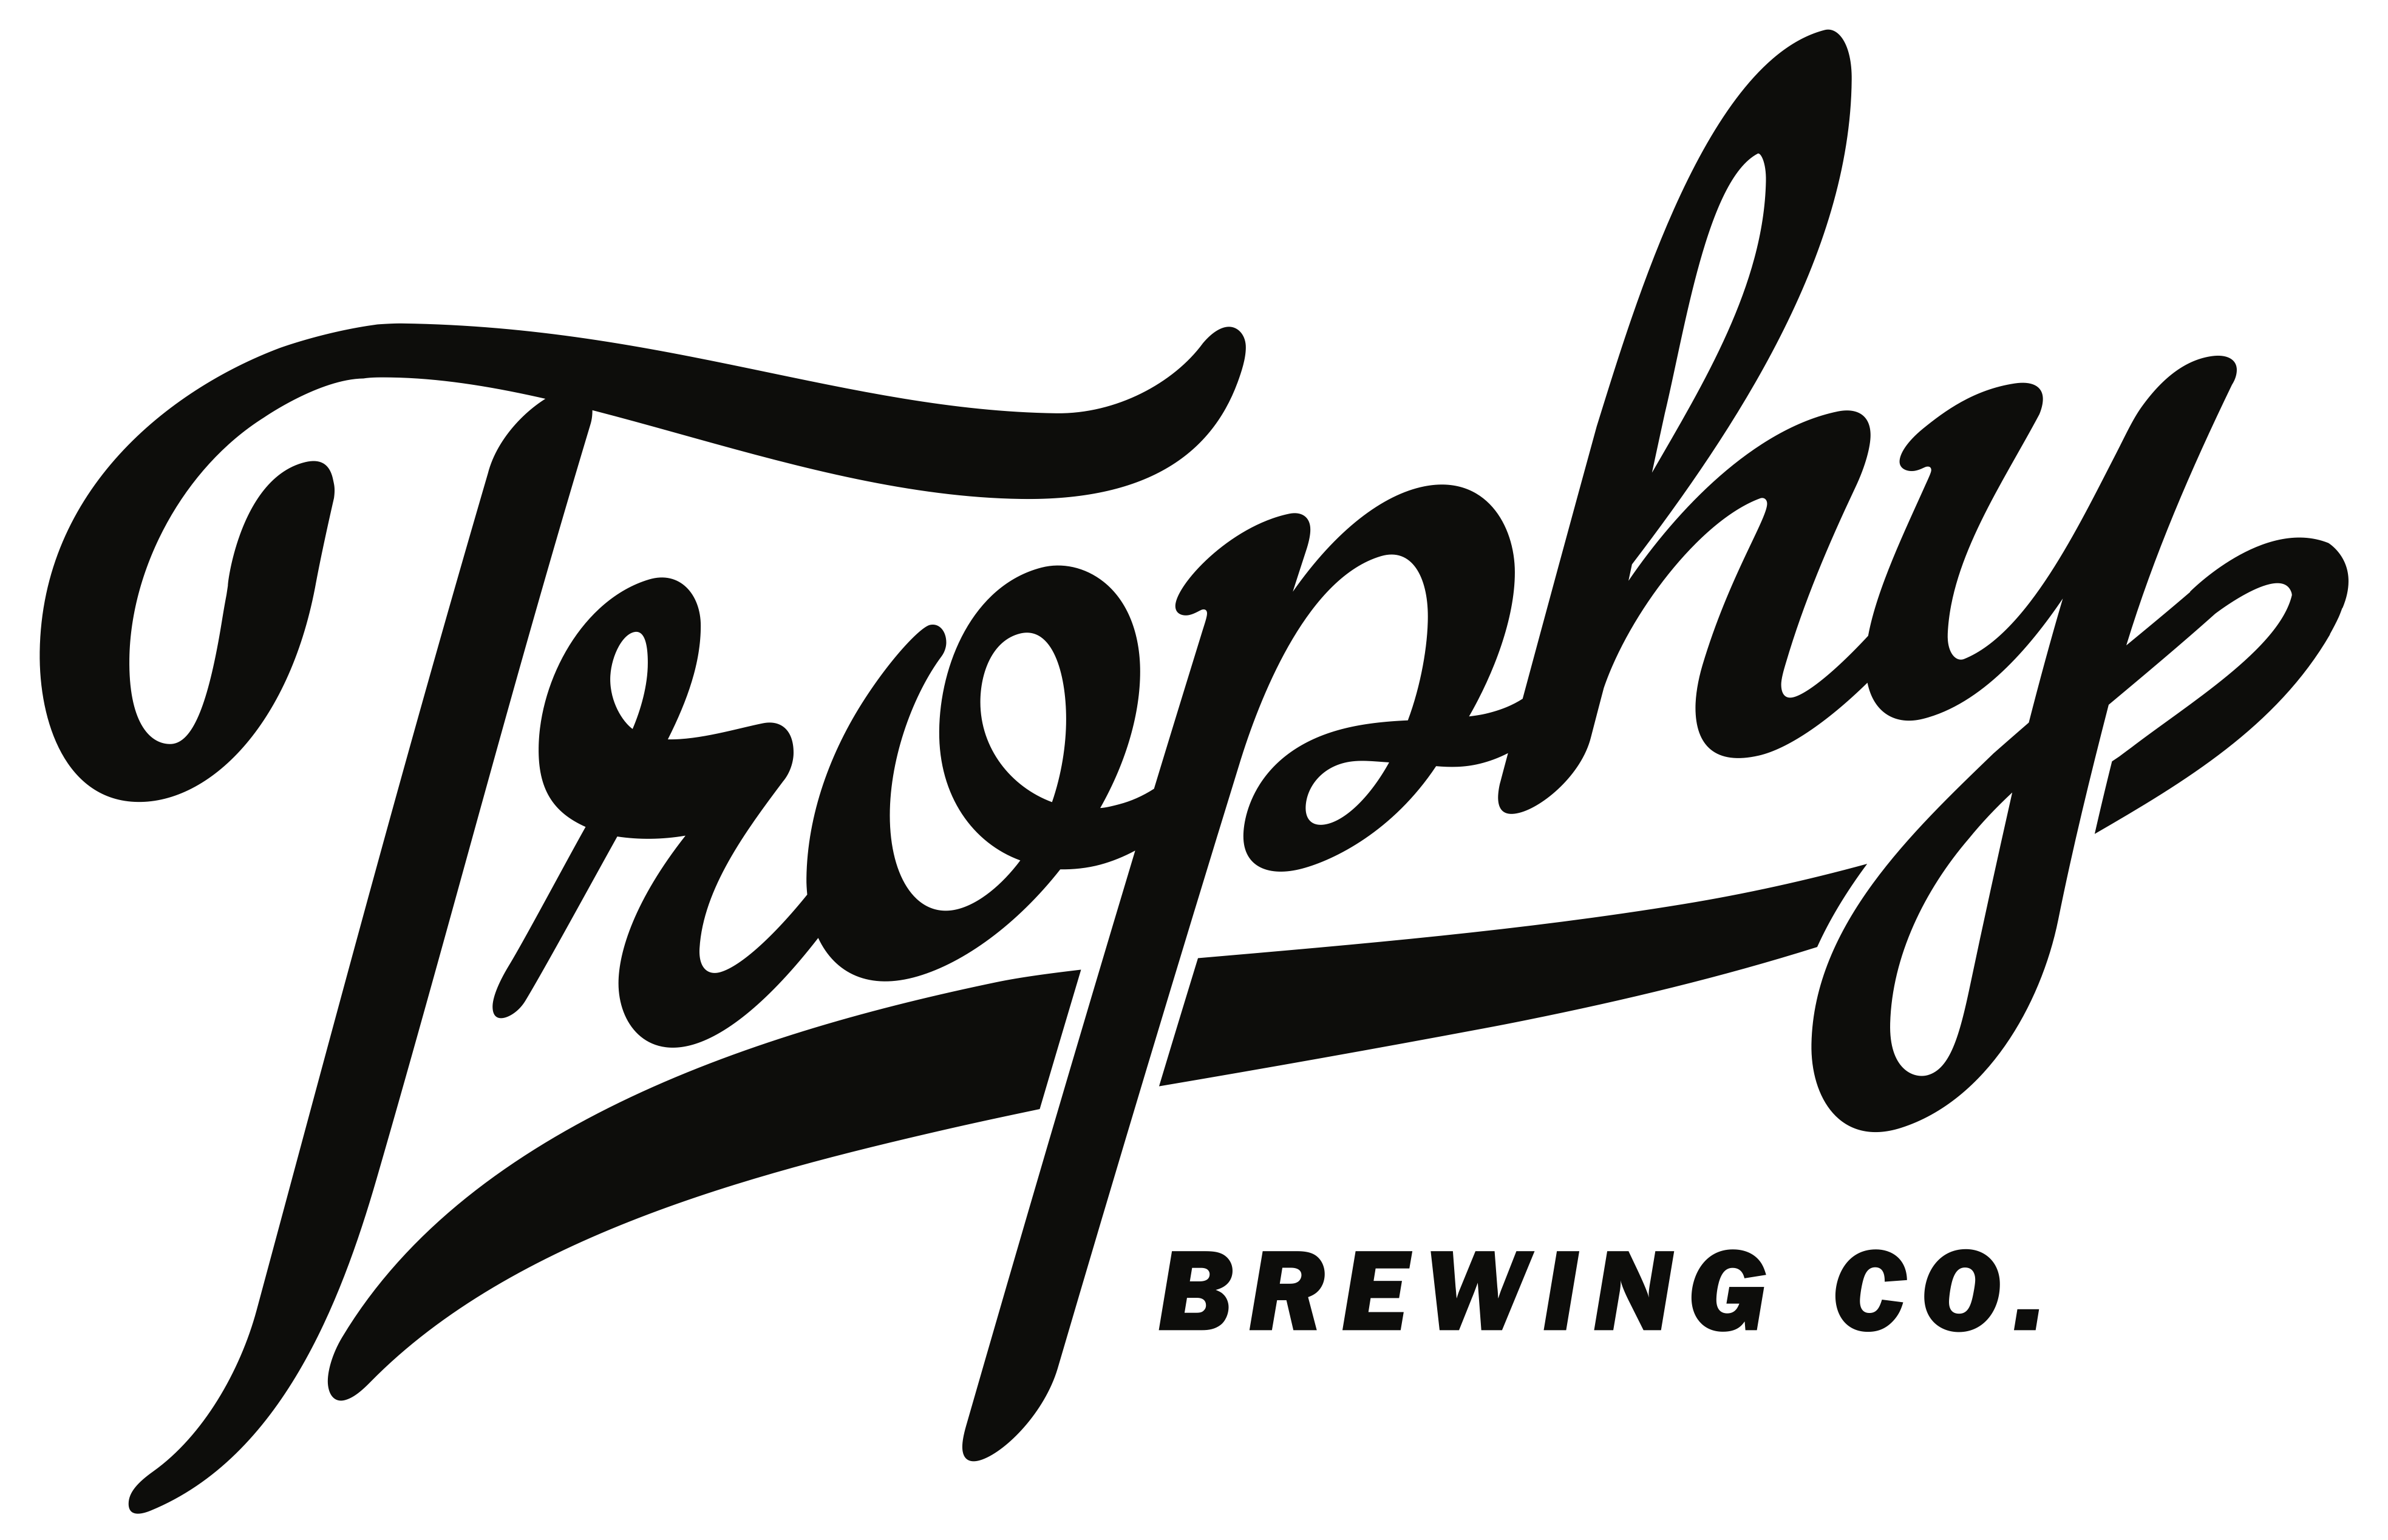 Sponsor Trophy Brewing Co.